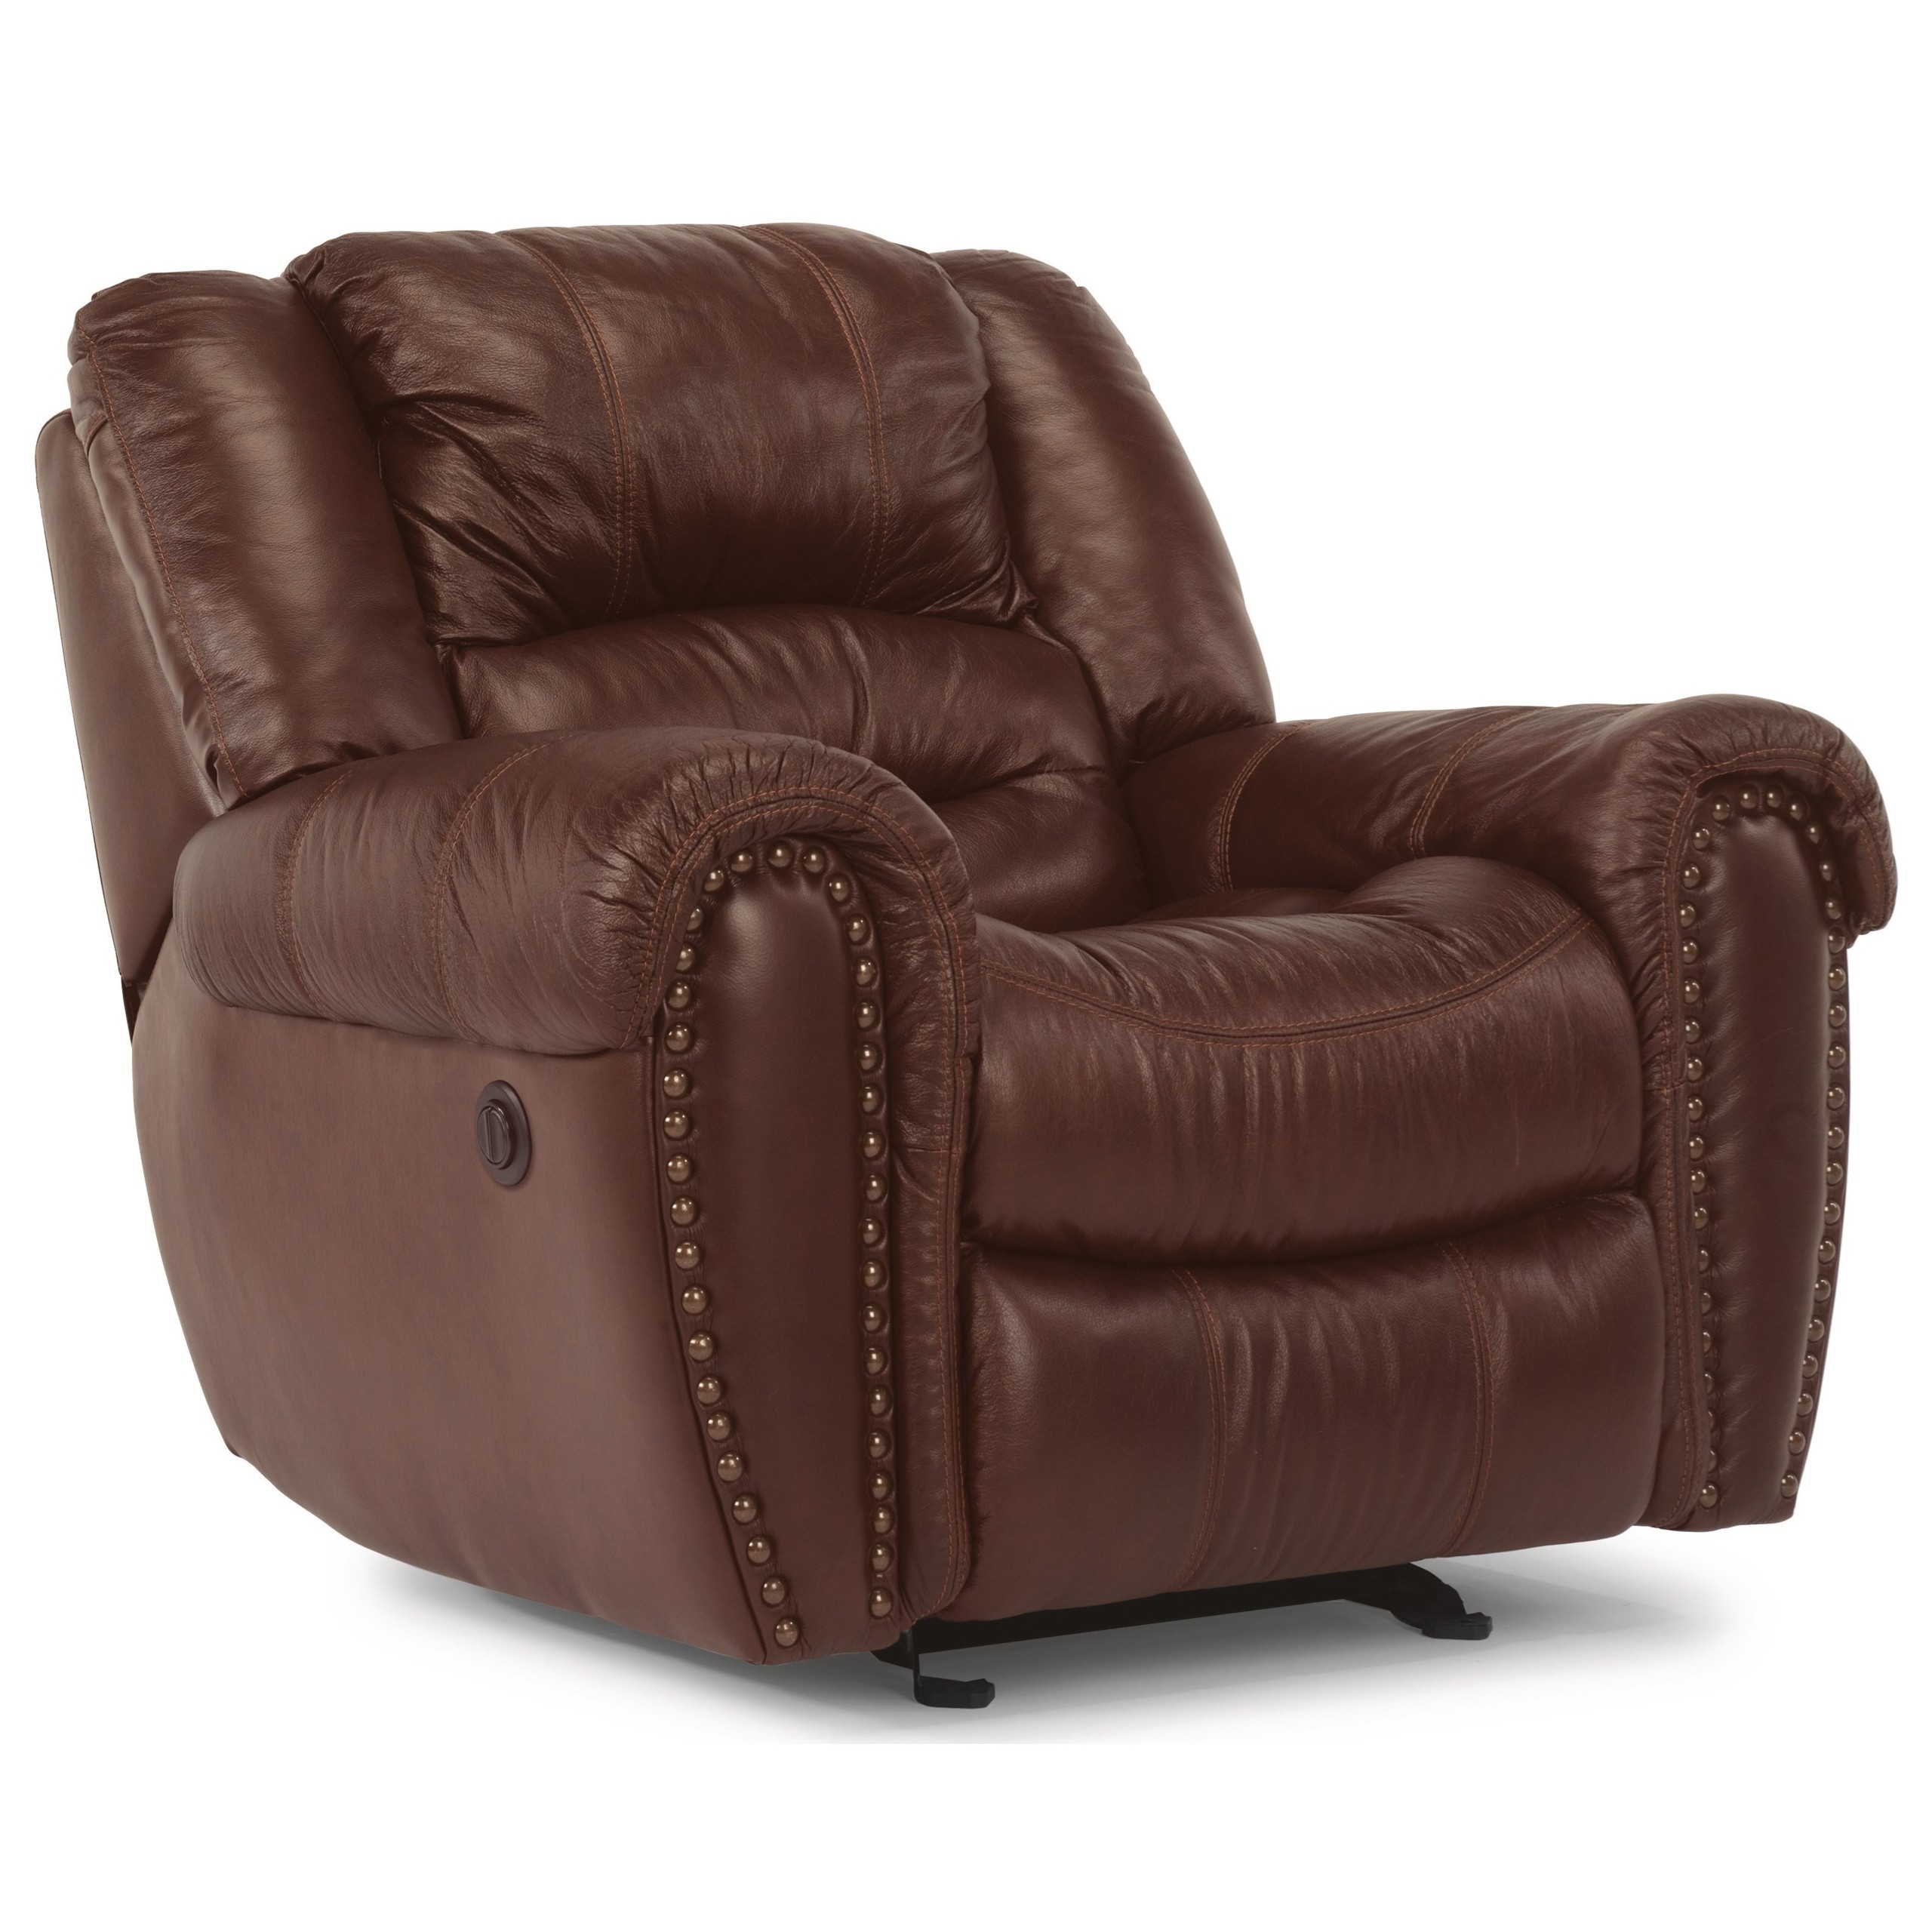 Flexsteel crosstown brown leather power recliner